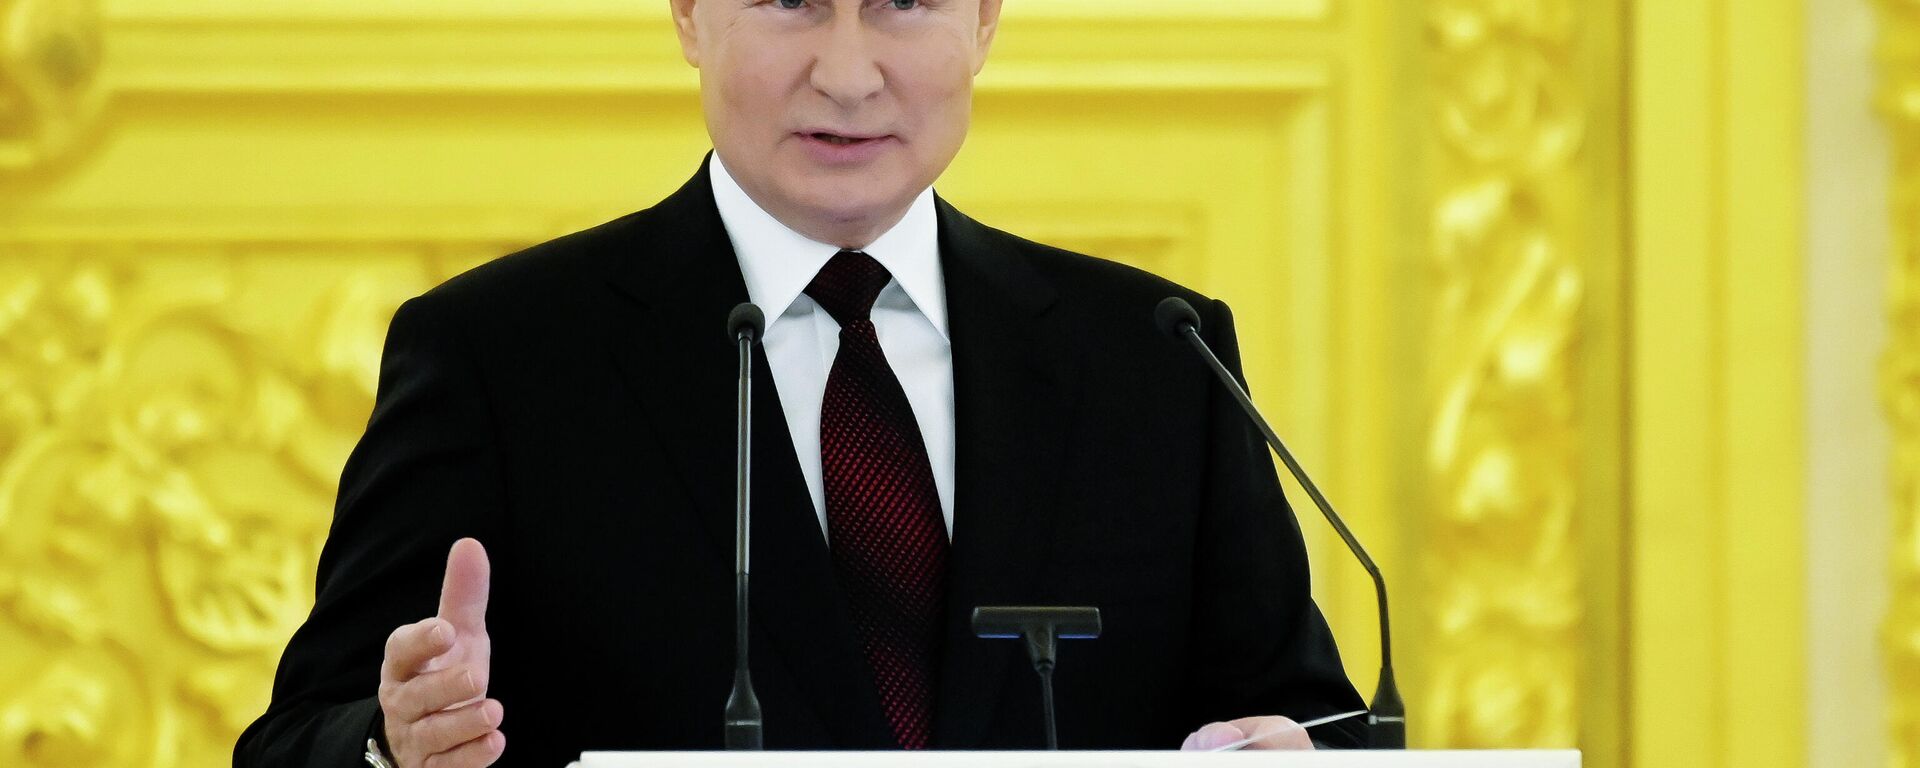 O presidente russo, Vladimir Putin, fala durante cerimônia para receber as credenciais de embaixadores estrangeiros no Kremlin, em Moscou, Rússia, 1º de dezembro de 2021 - Sputnik Brasil, 1920, 01.12.2021